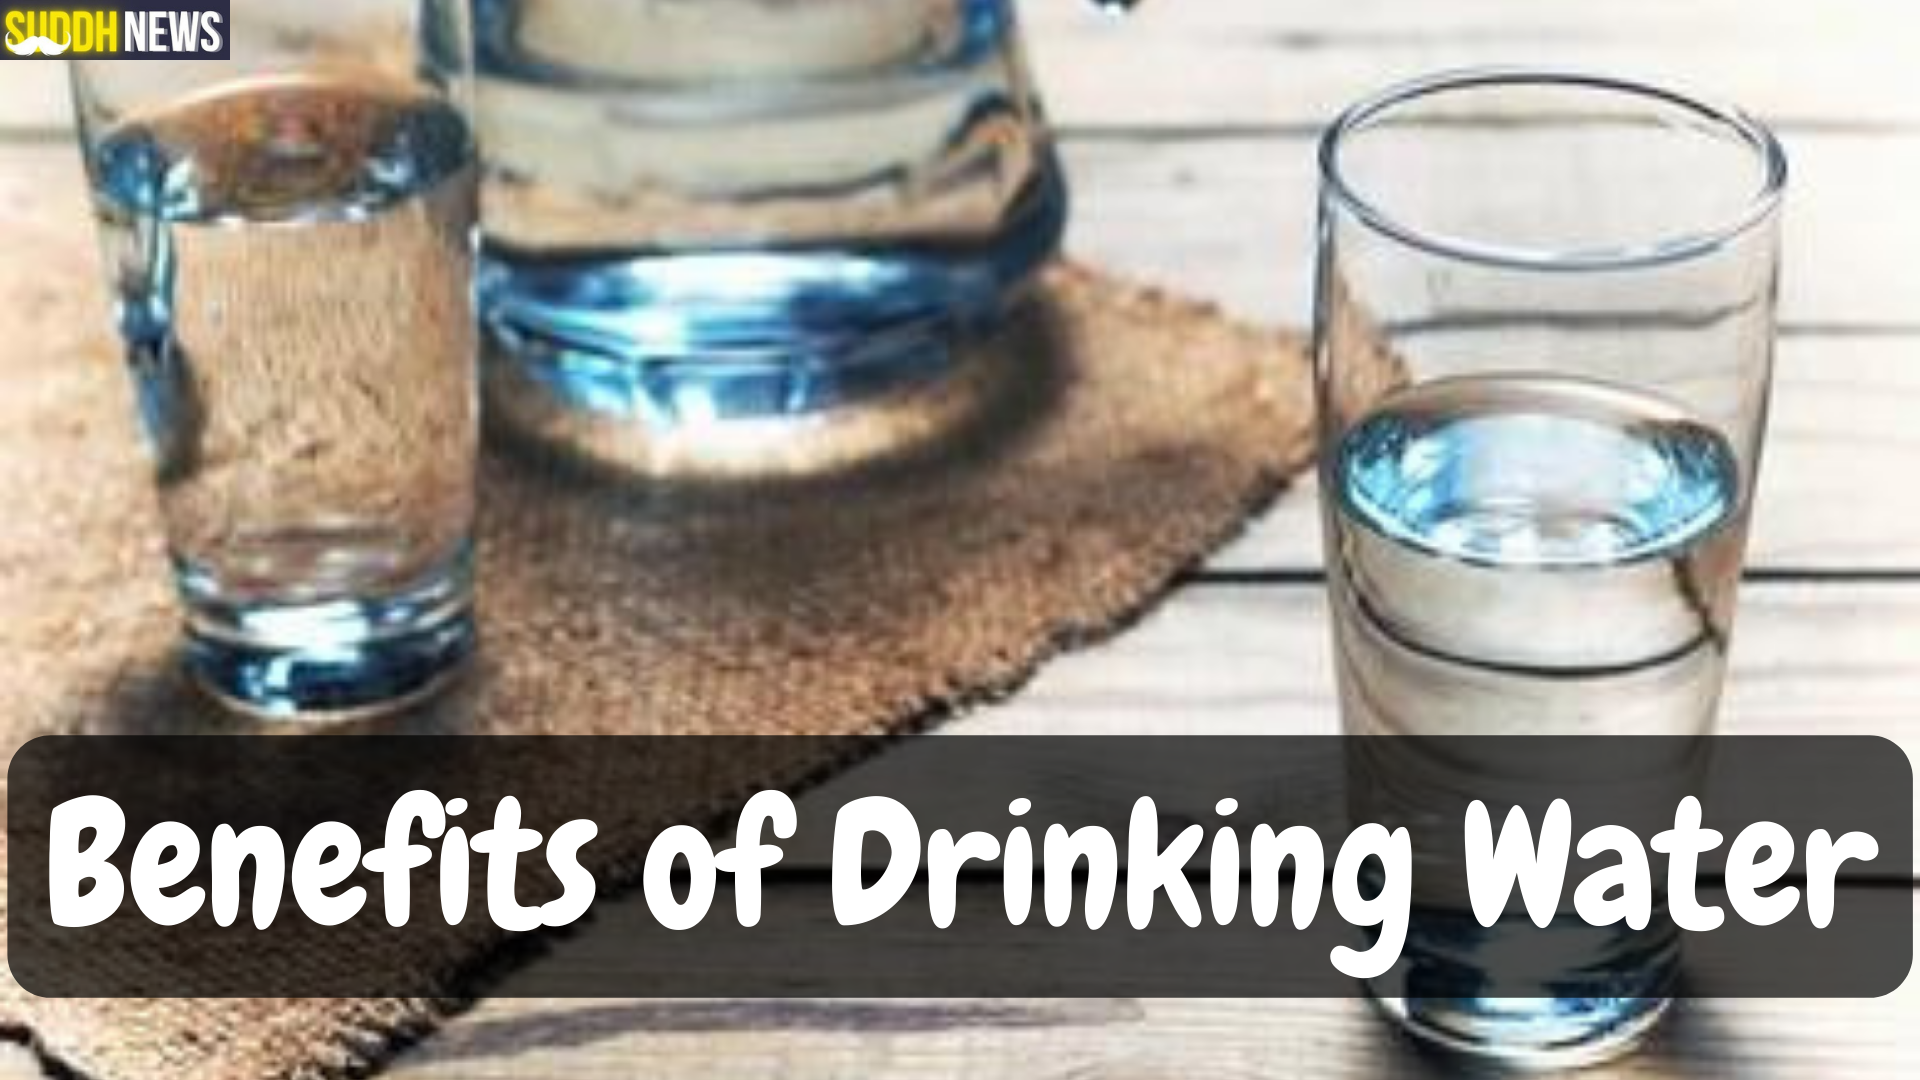 पानी पीने के 10 फायदे और 10 नुकसान विषय पर एक संपूर्ण यूट्यूब वीडियो स्क्रिप्ट लिखें